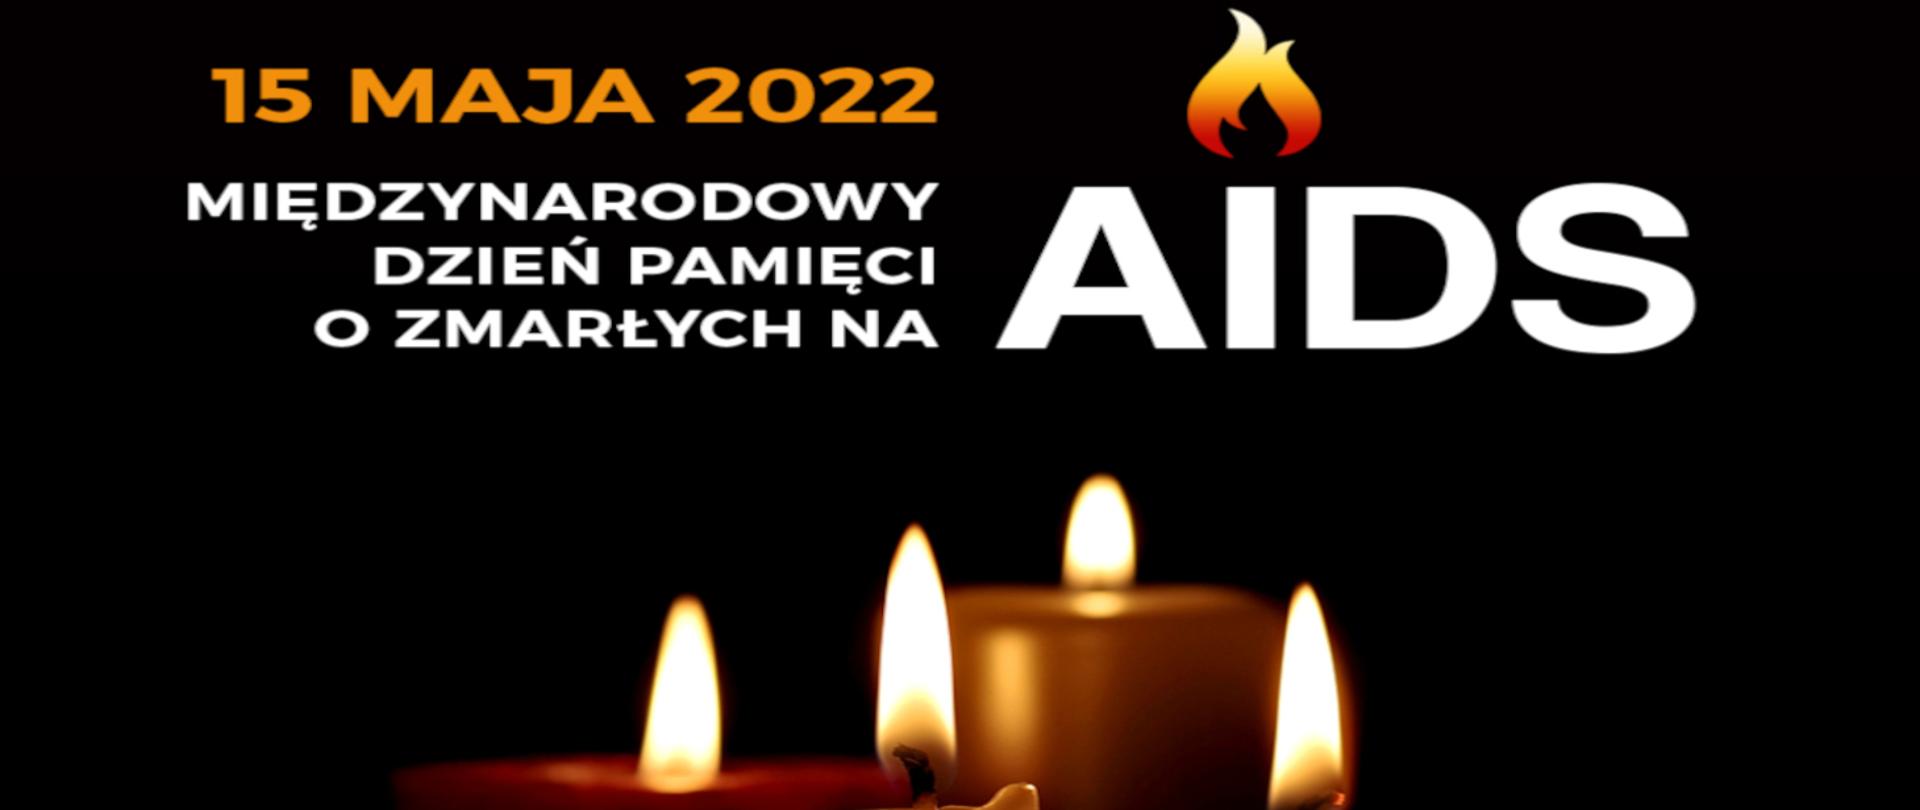 15 maja 2022 Międzynarodowy Dzień Pamięci o Zmarłych na AIDS